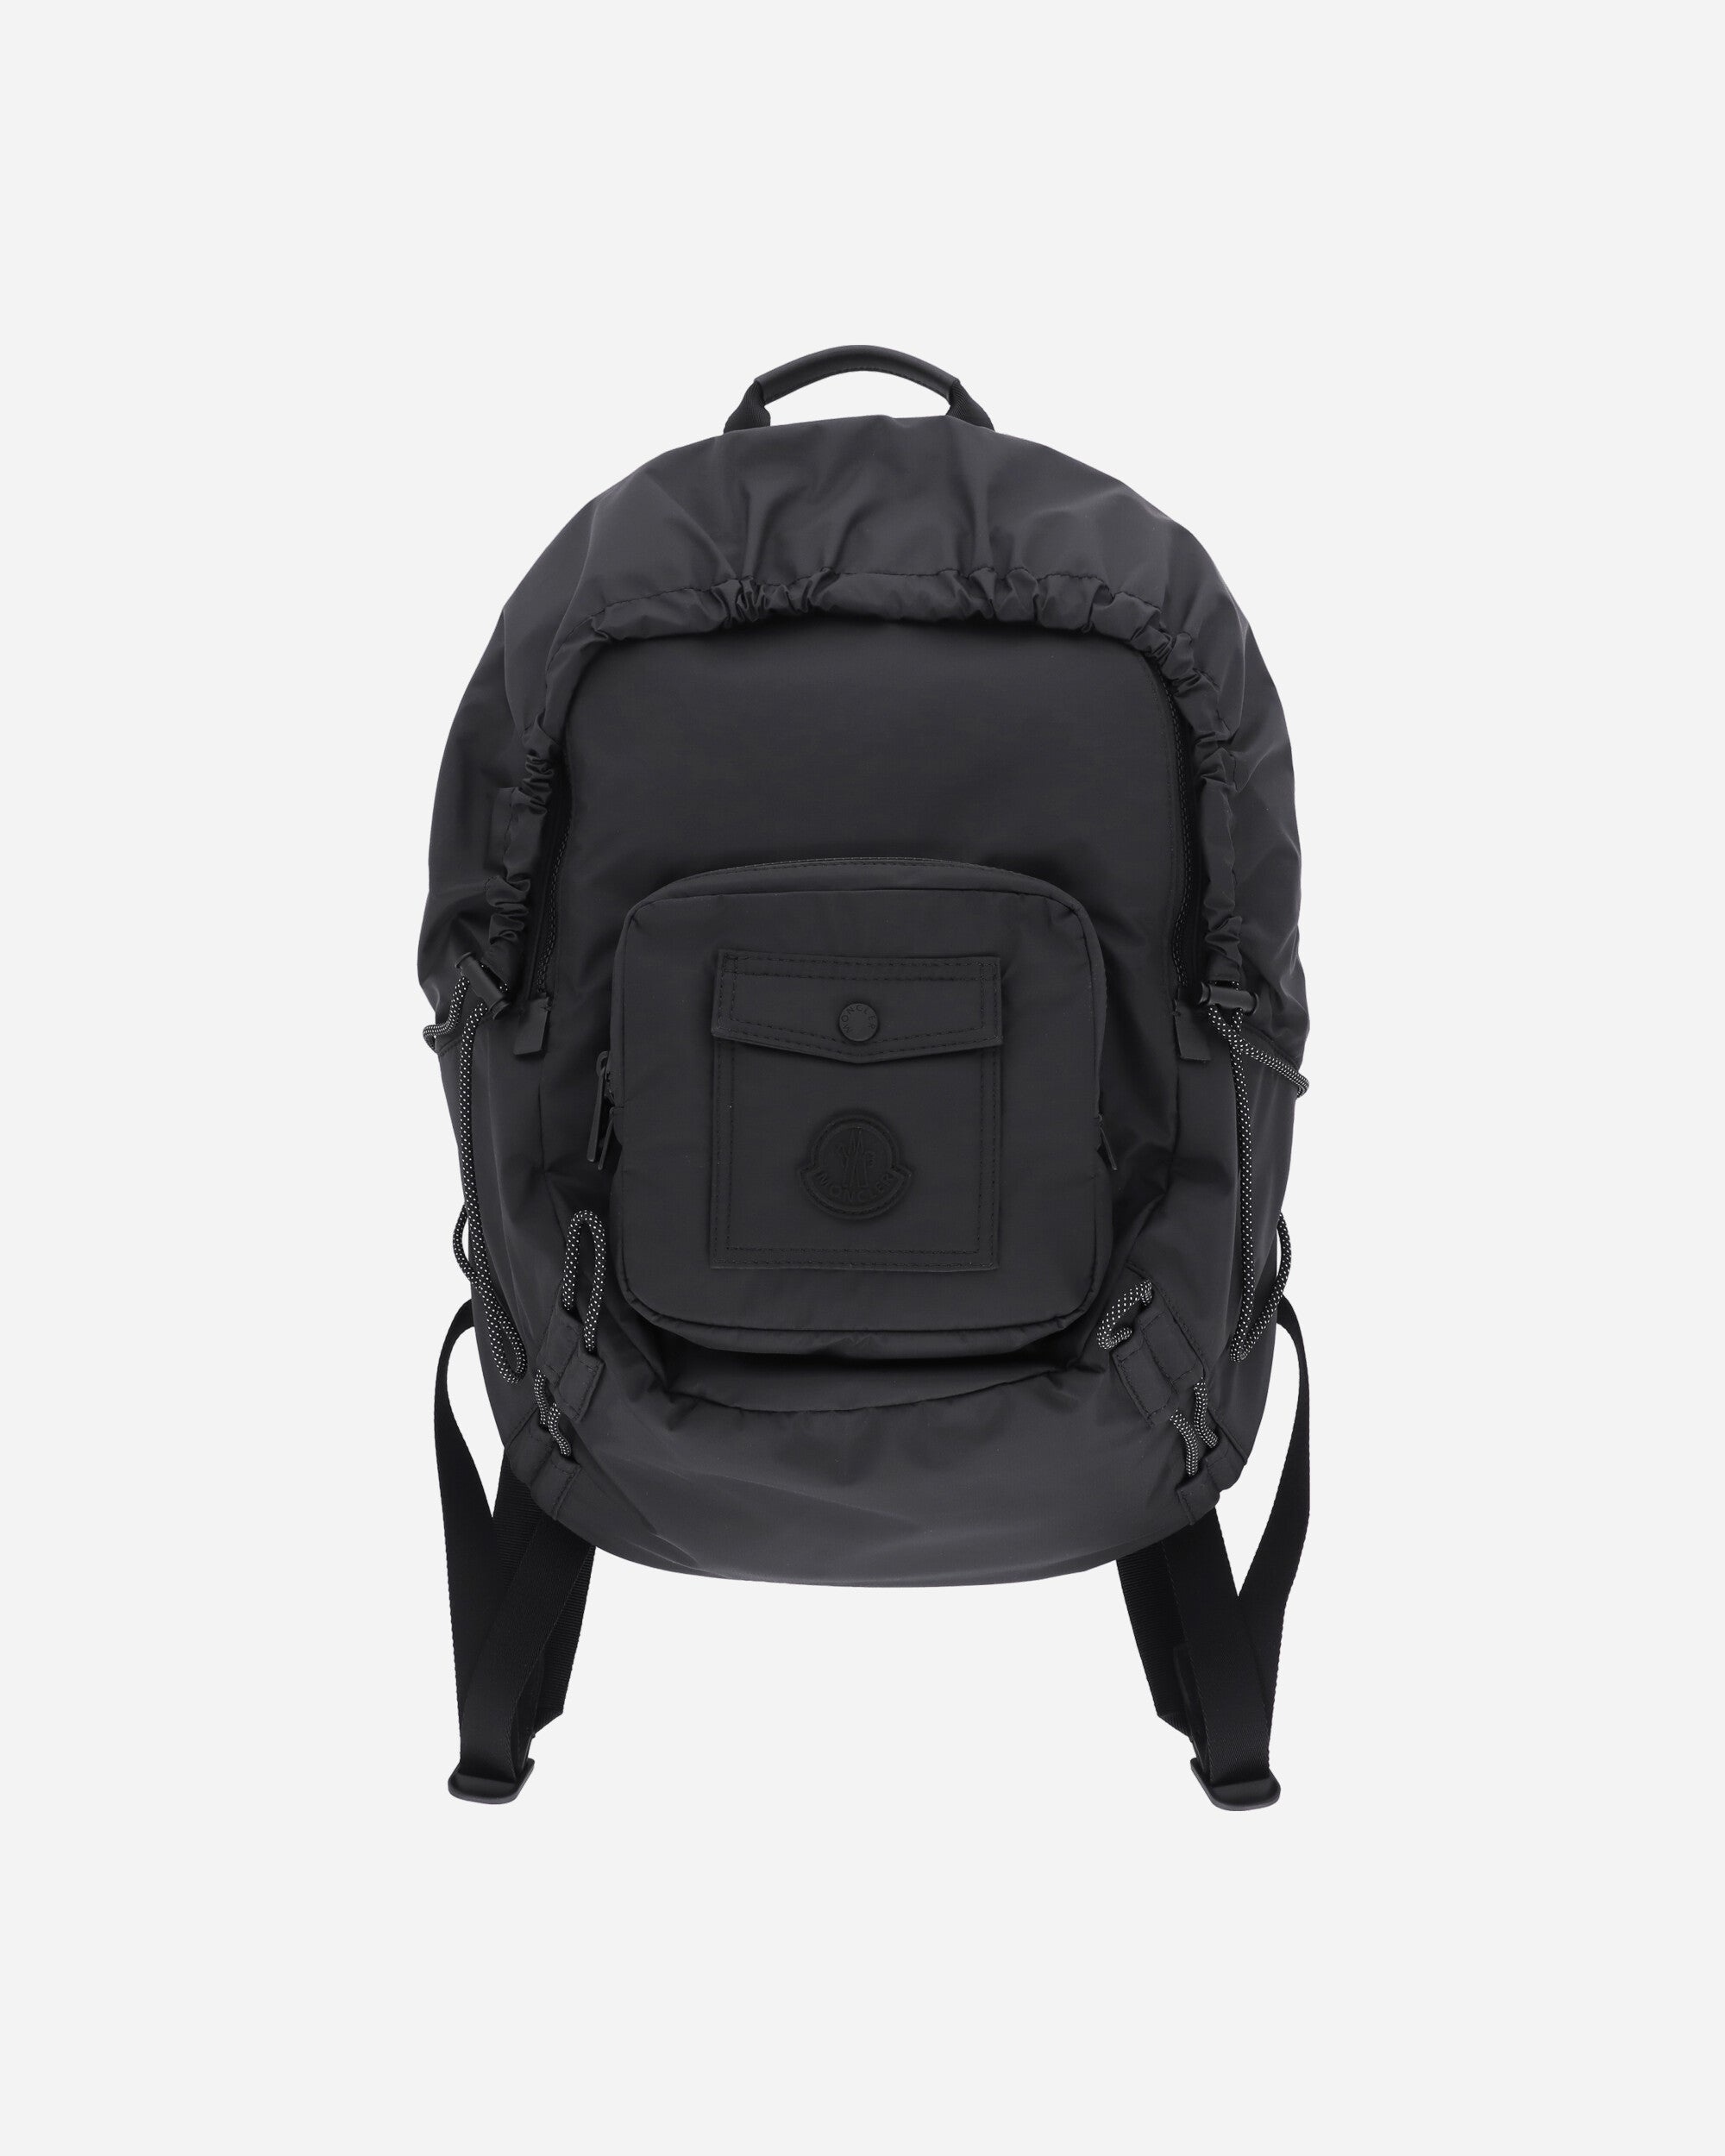 Makaio Backpack Black - 1